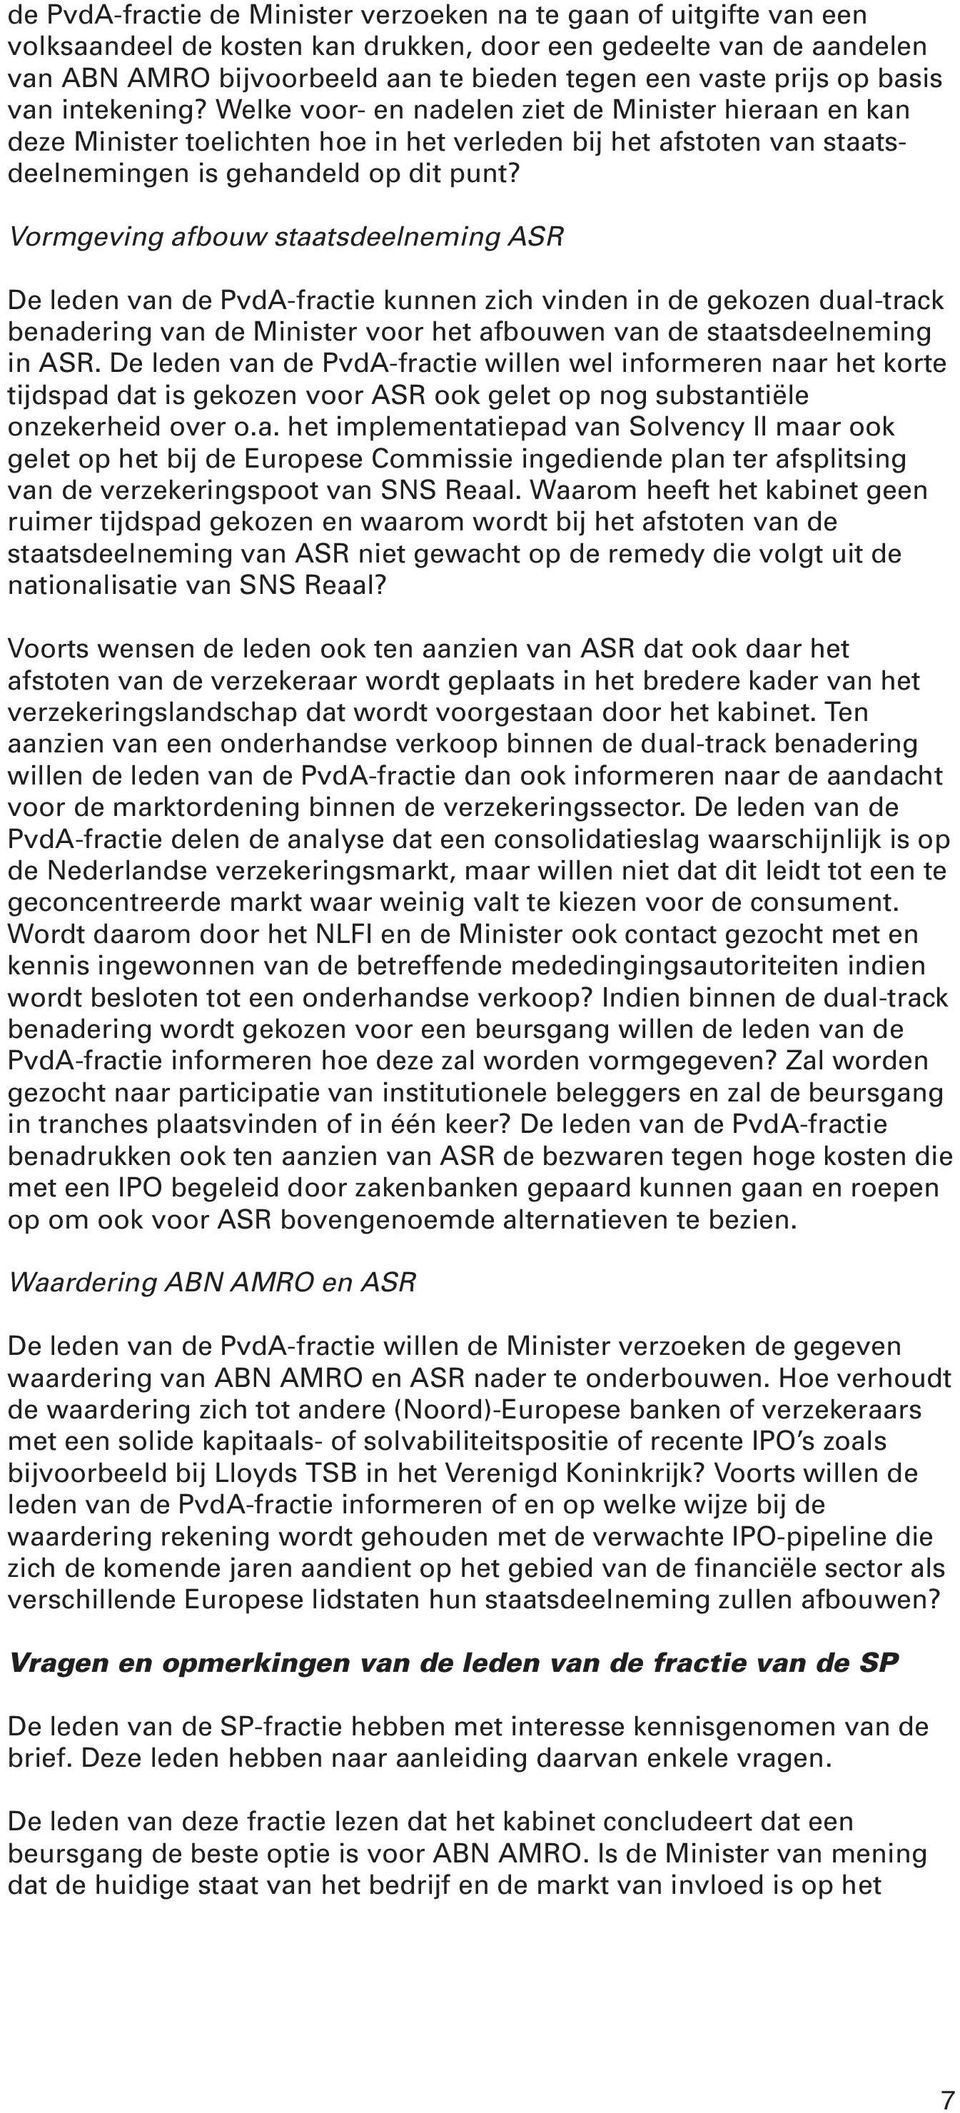 Vormgeving afbouw staatsdeelneming ASR De leden van de PvdA-fractie kunnen zich vinden in de gekozen dual-track benadering van de Minister voor het afbouwen van de staatsdeelneming in ASR.